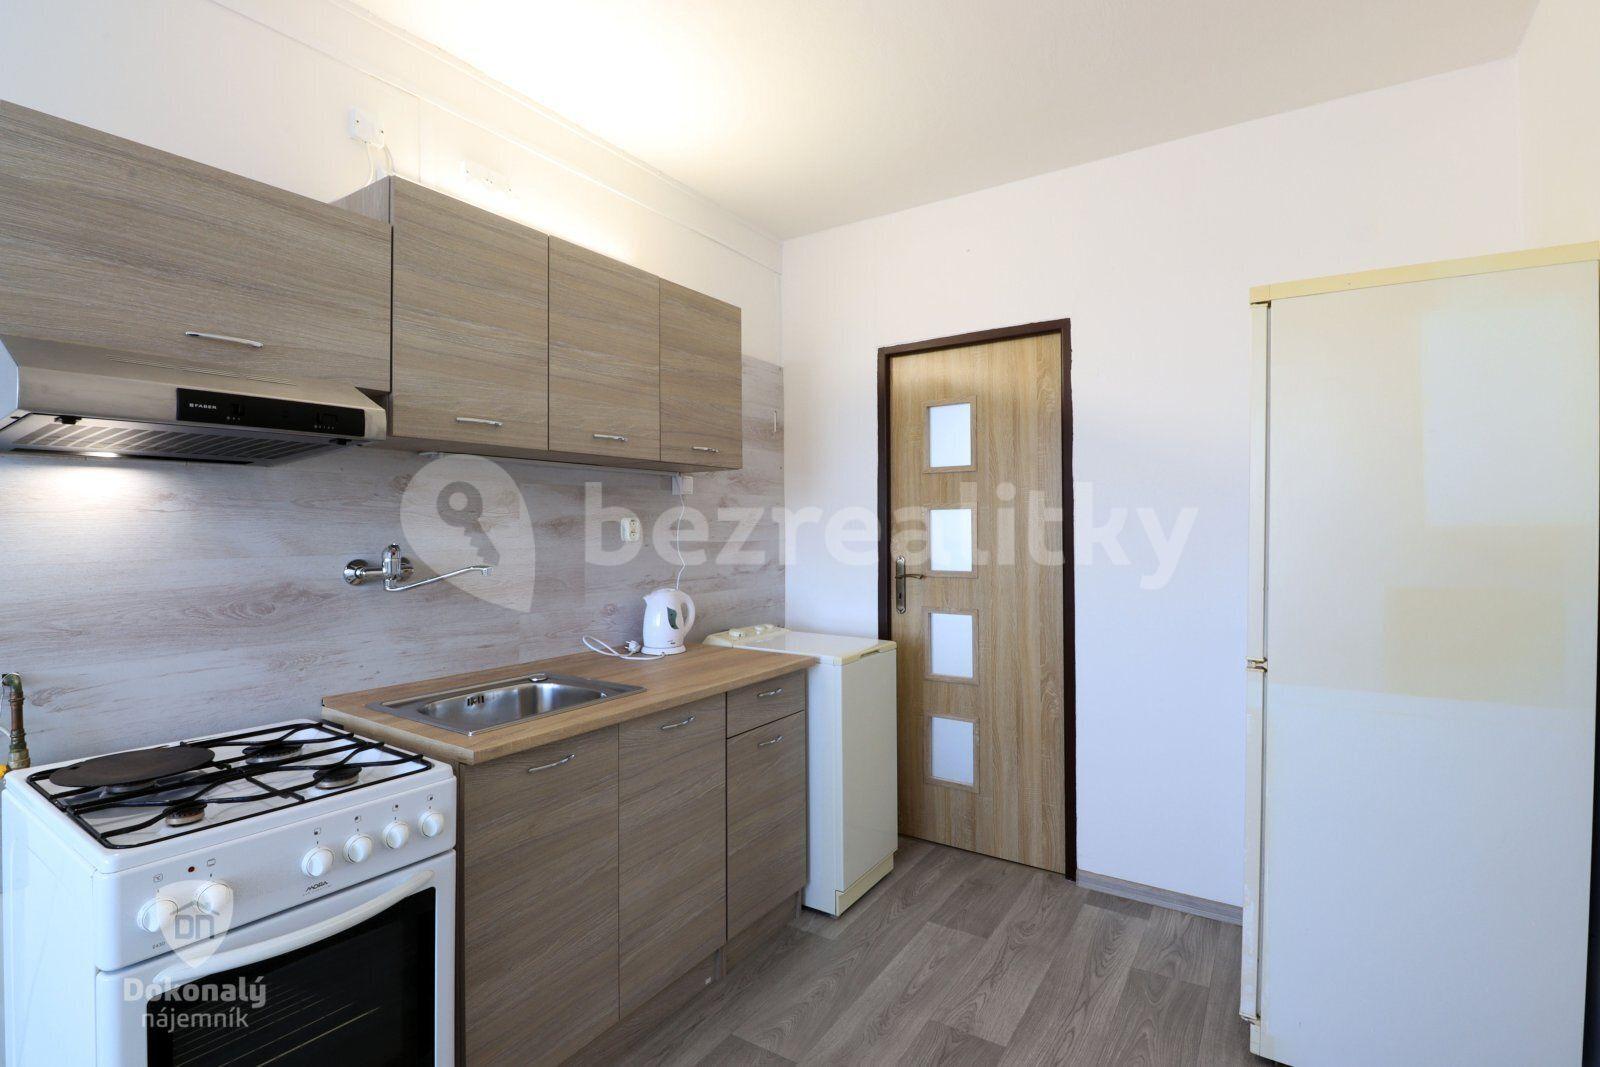 3 bedroom flat to rent, 70 m², Dlouhá, Příbram, Středočeský Region